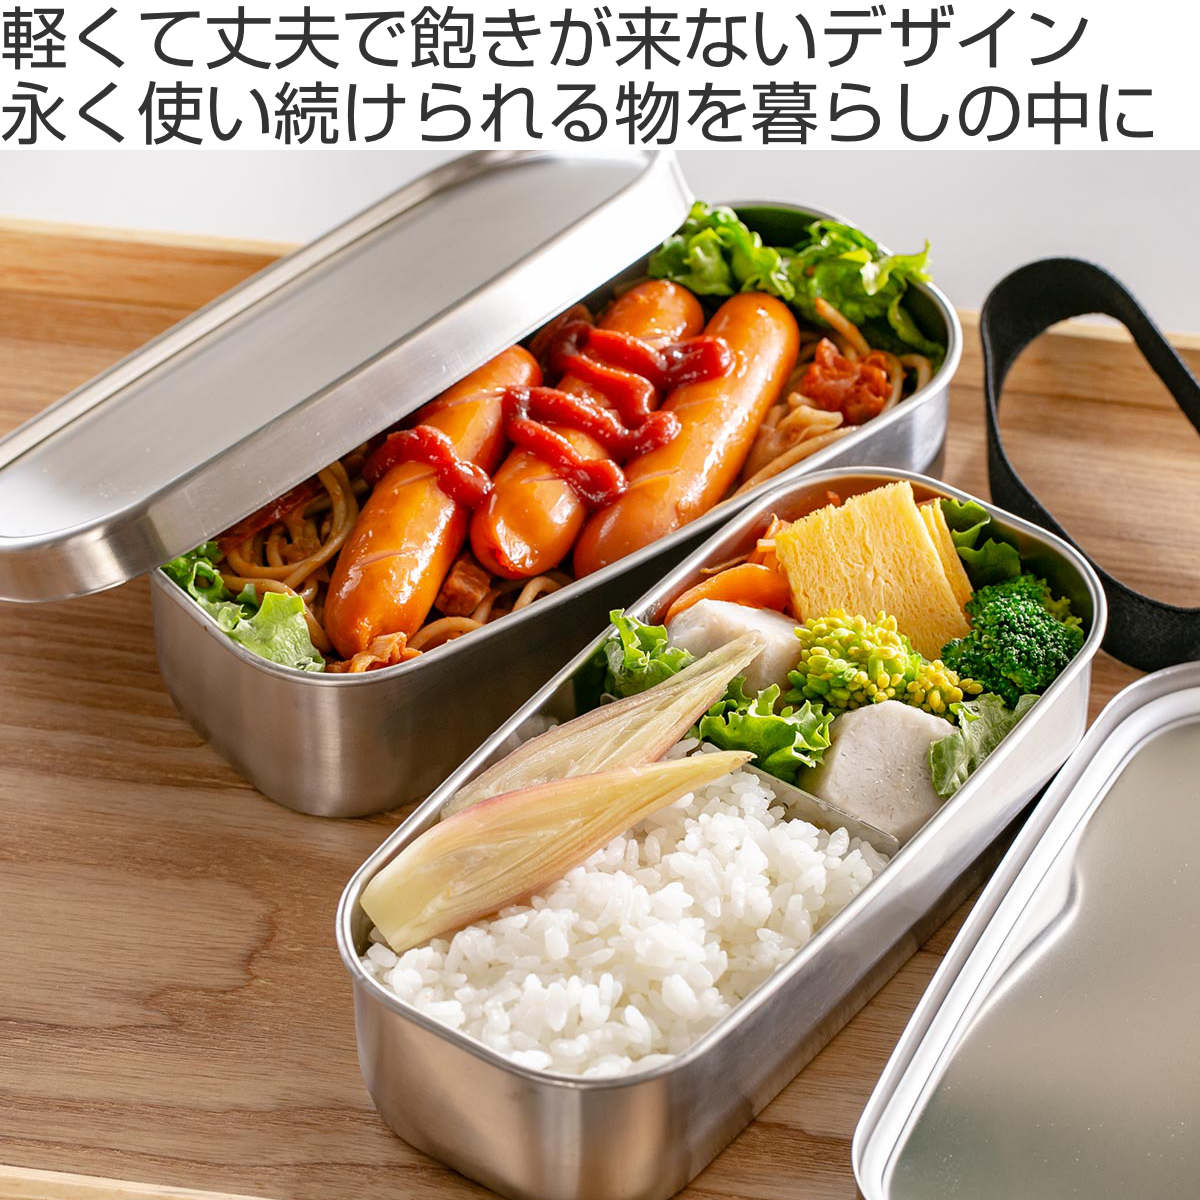  ателье I The wa коробка для завтрака 1000ml UTILE угол длина ланч box 2 уровень ( aizawa женщина мужчина . ребенок взрослый большая вместимость сделано в Японии 2 уровень . коробка для завтрака ланч box нержавеющая сталь )